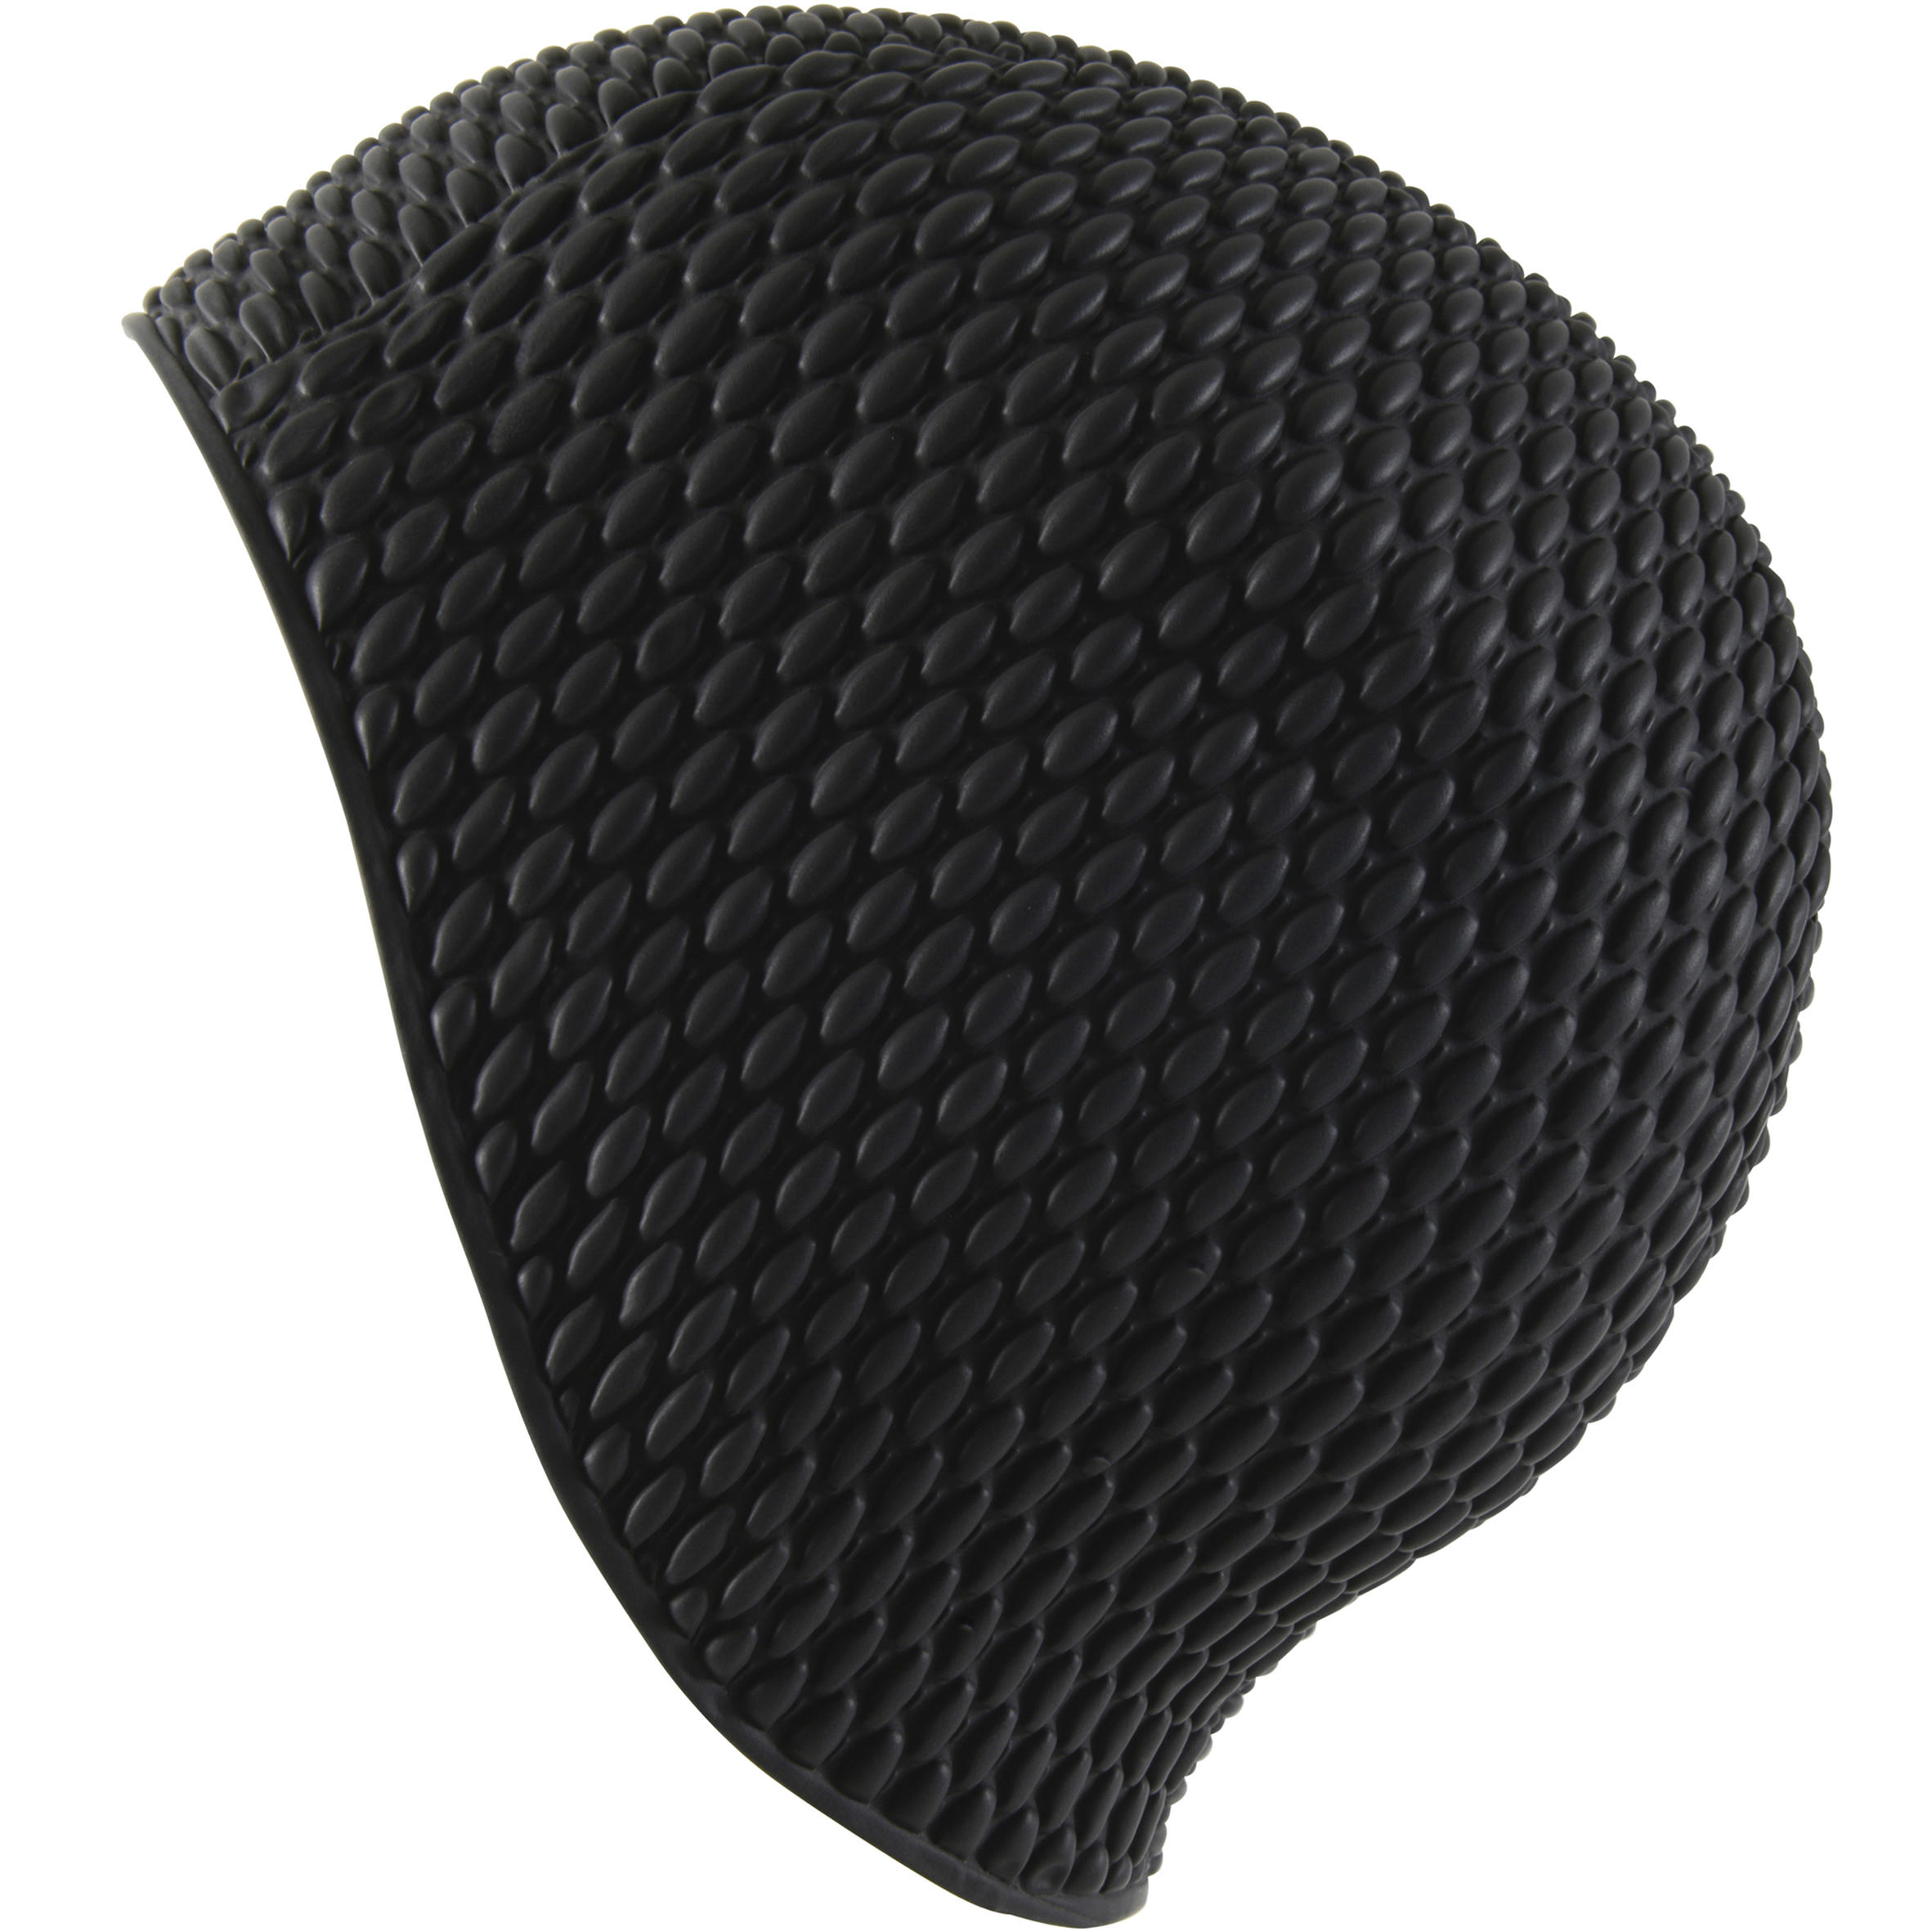 Latex waffle stitch swim cap - One size - Black 3/3